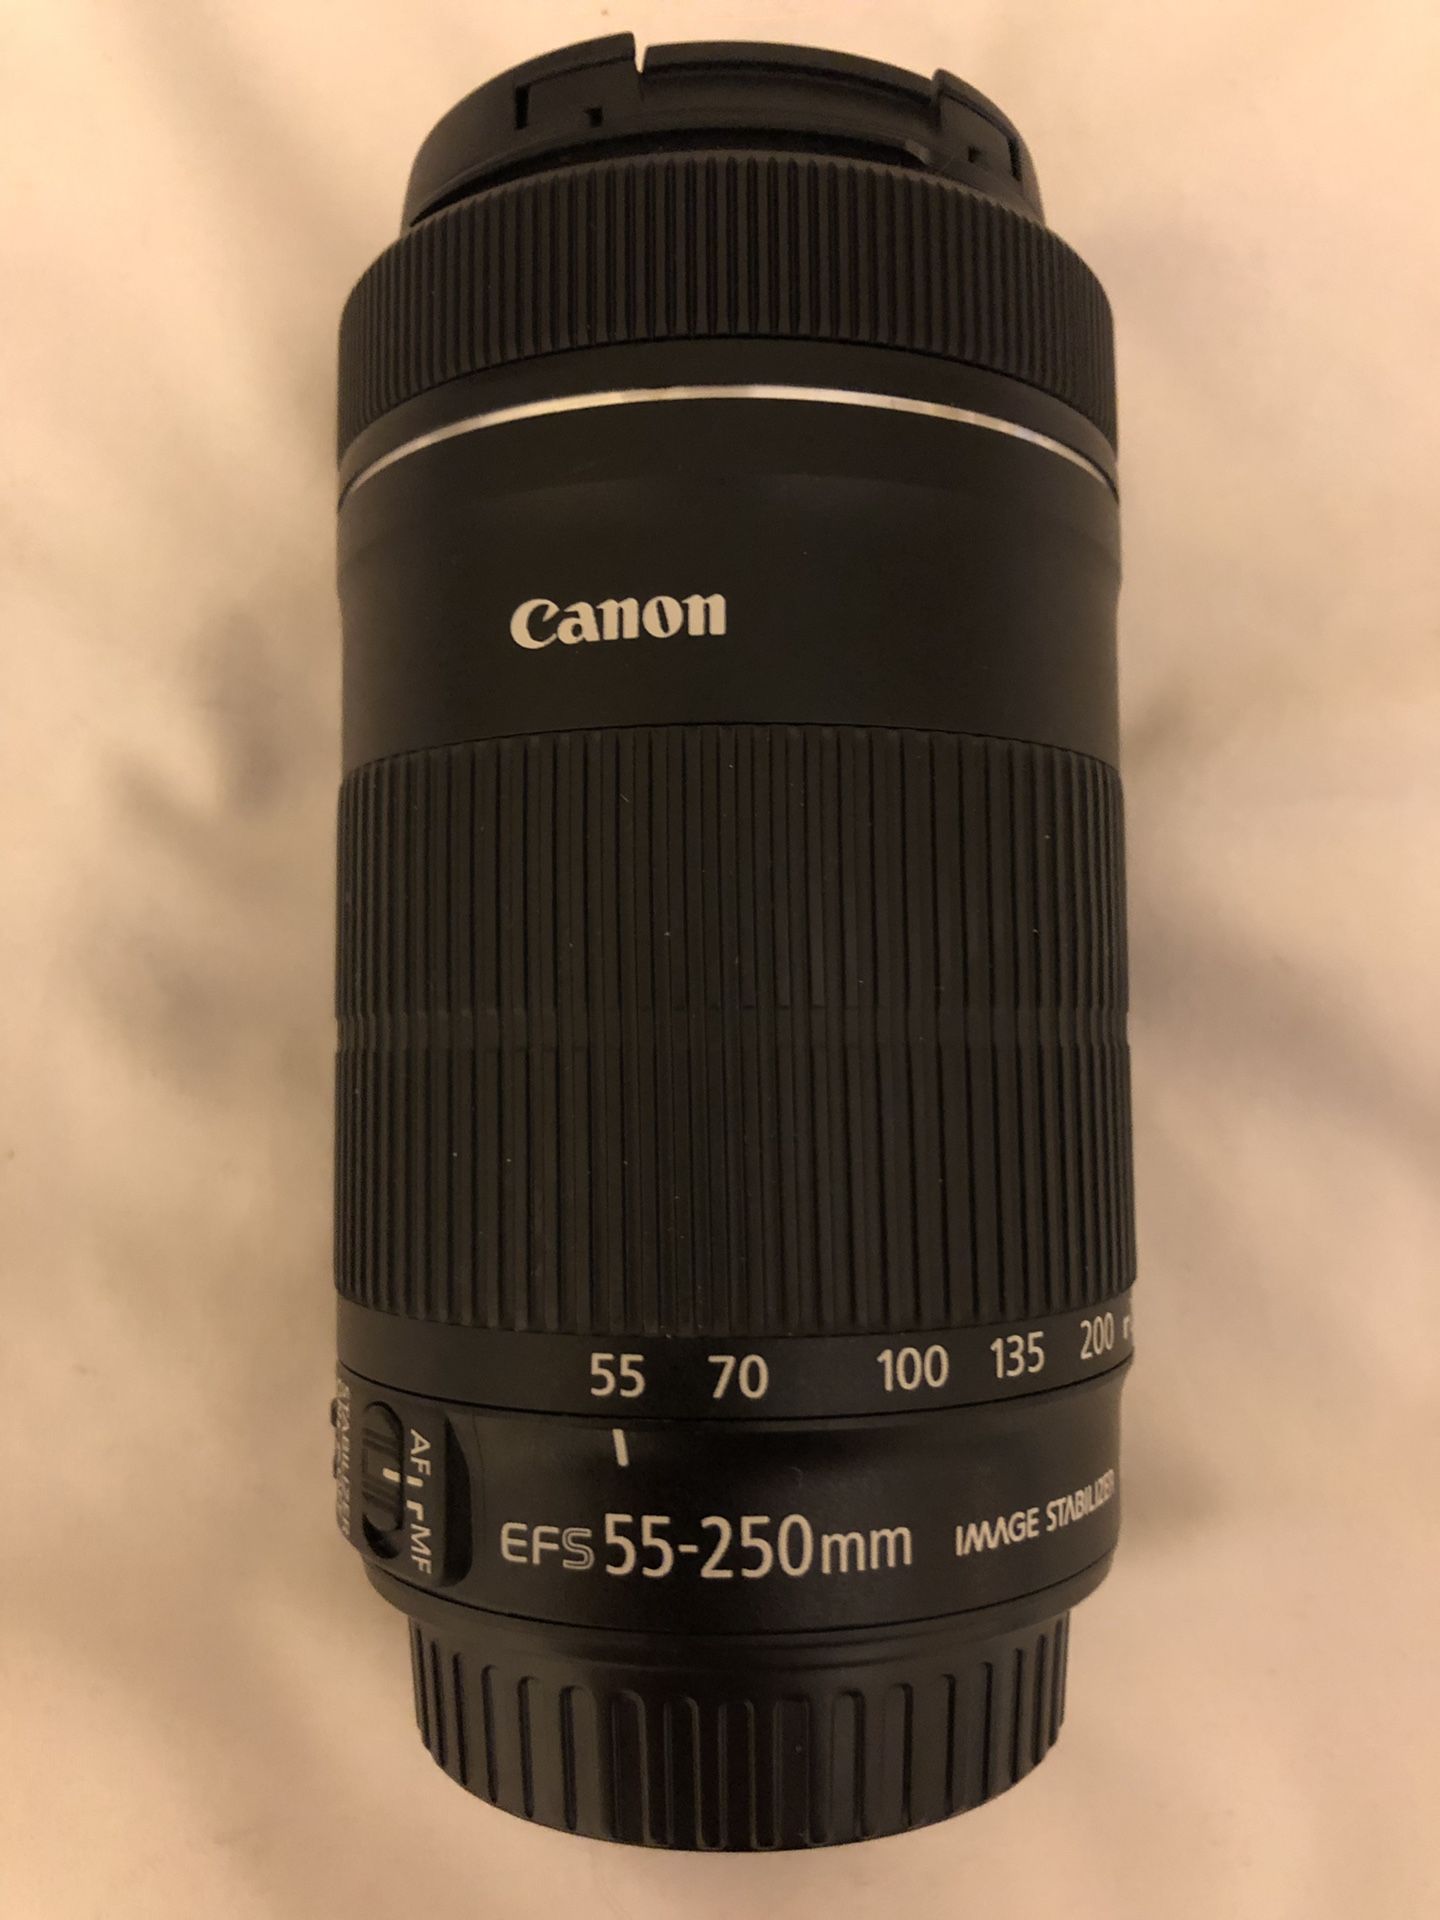 Canon lense 55-250mm